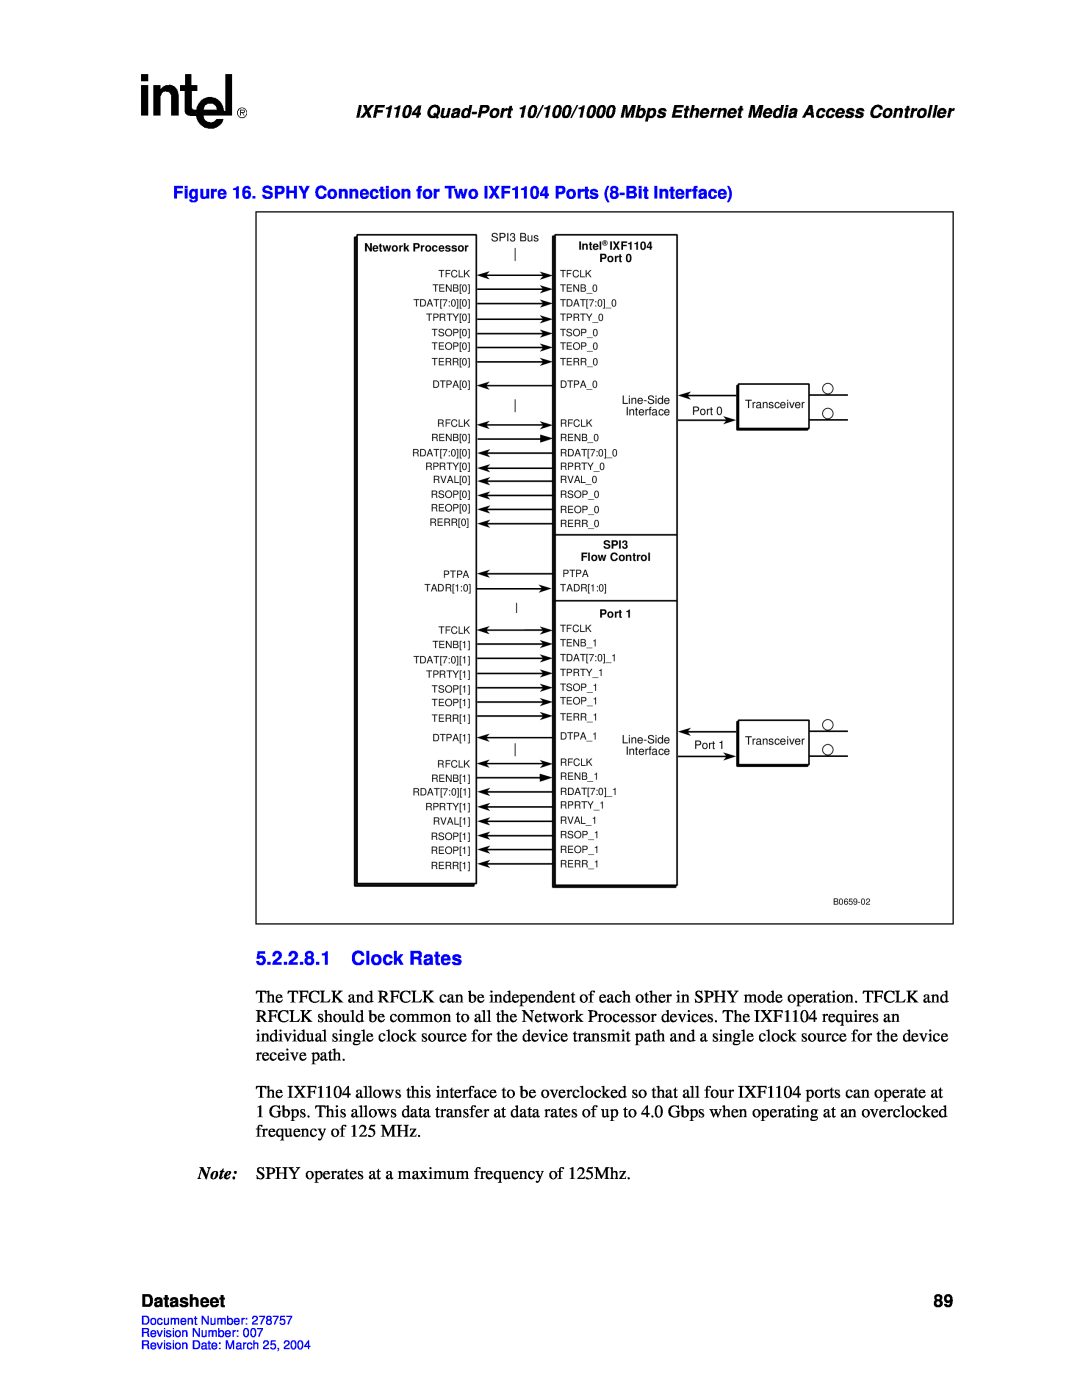 Intel IXF1104 manual 5.2.2.8.1Clock Rates, Datasheet 